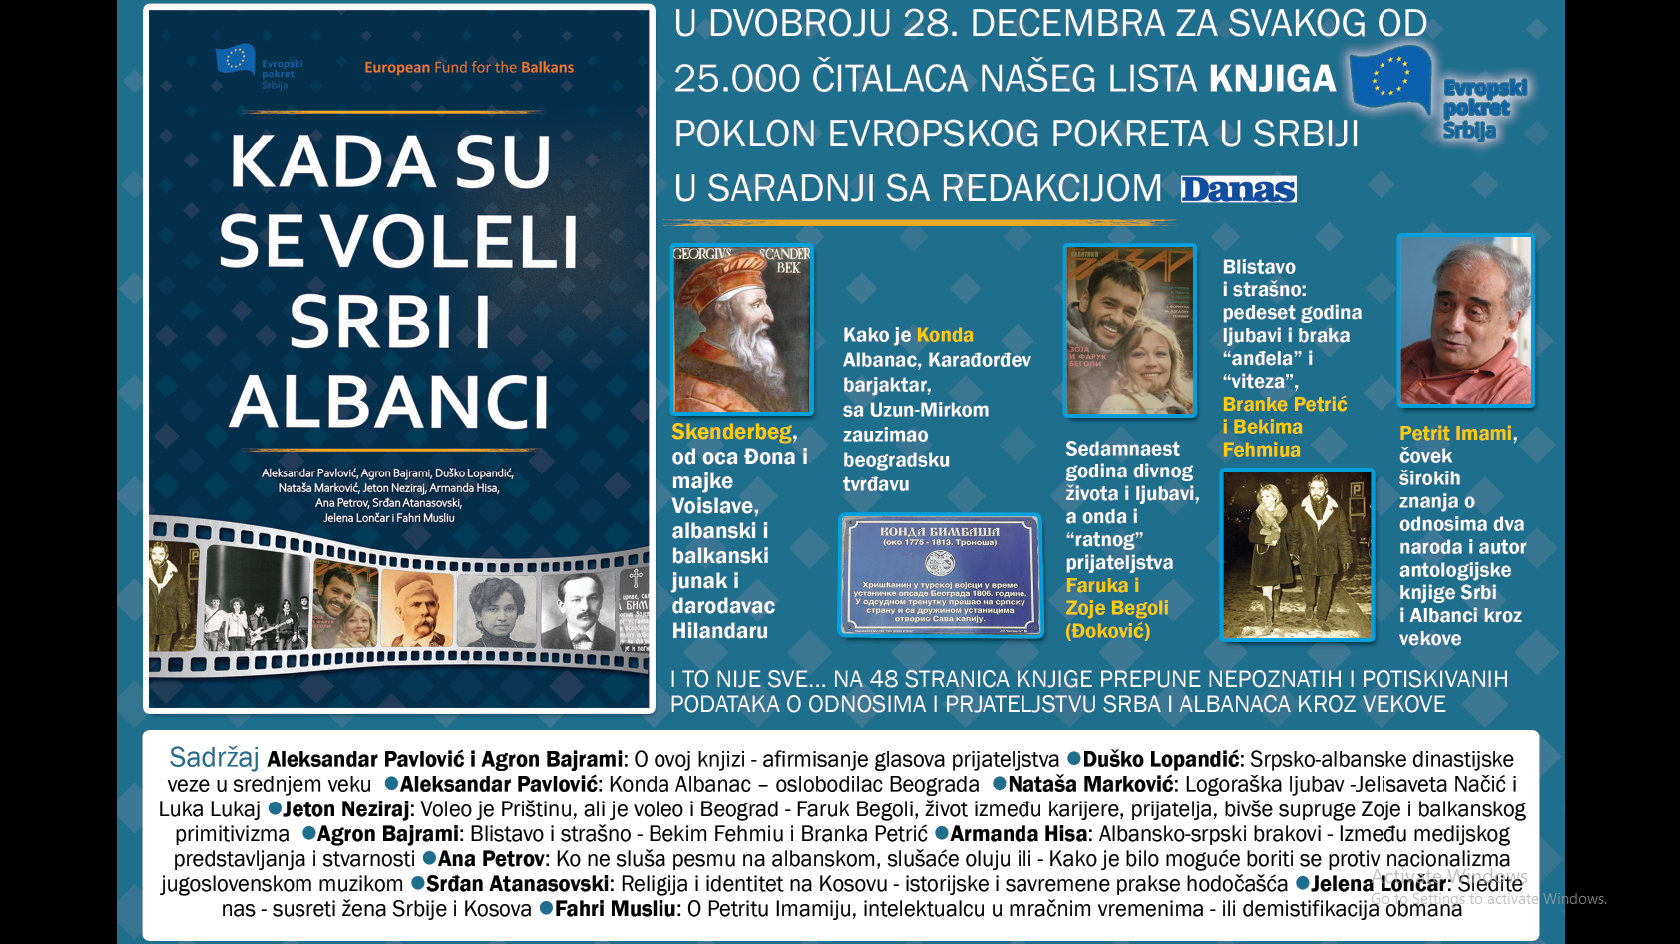 Poklon knjiga "Kada su se voleli Srbi i Albanci" u Danasu 28. decembra 1